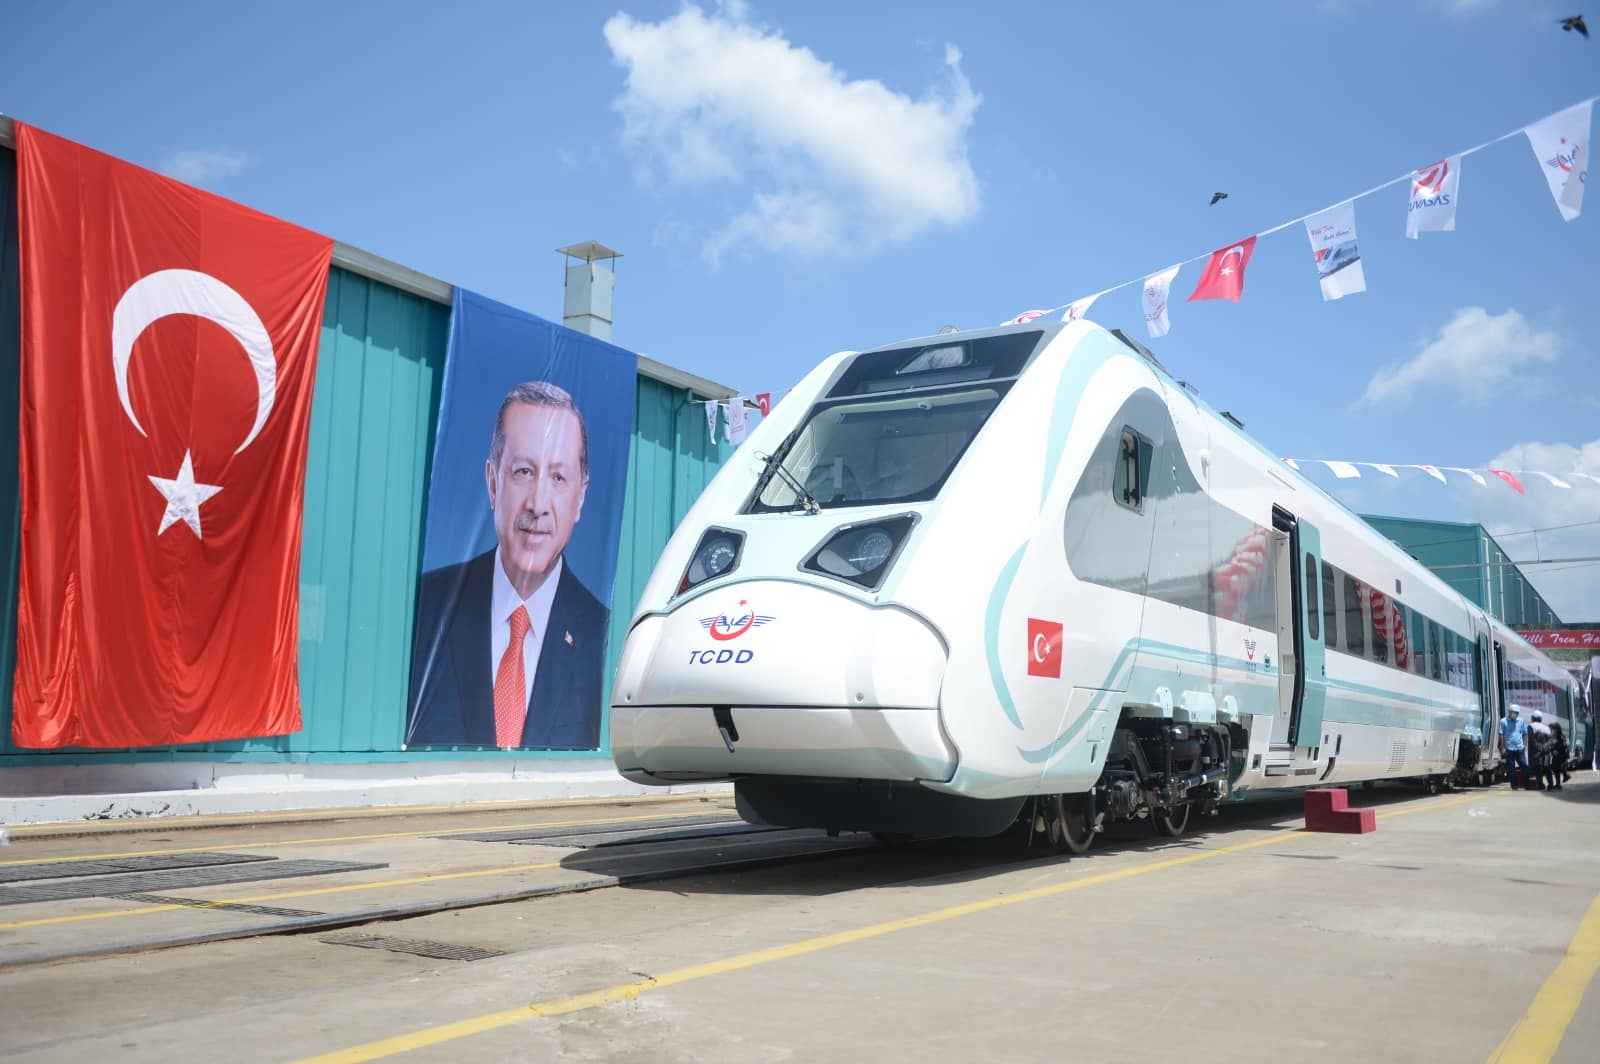 Milli Elektrikli Hızlı Treni 160 km hıza ulaşacak 2023 seri üretim